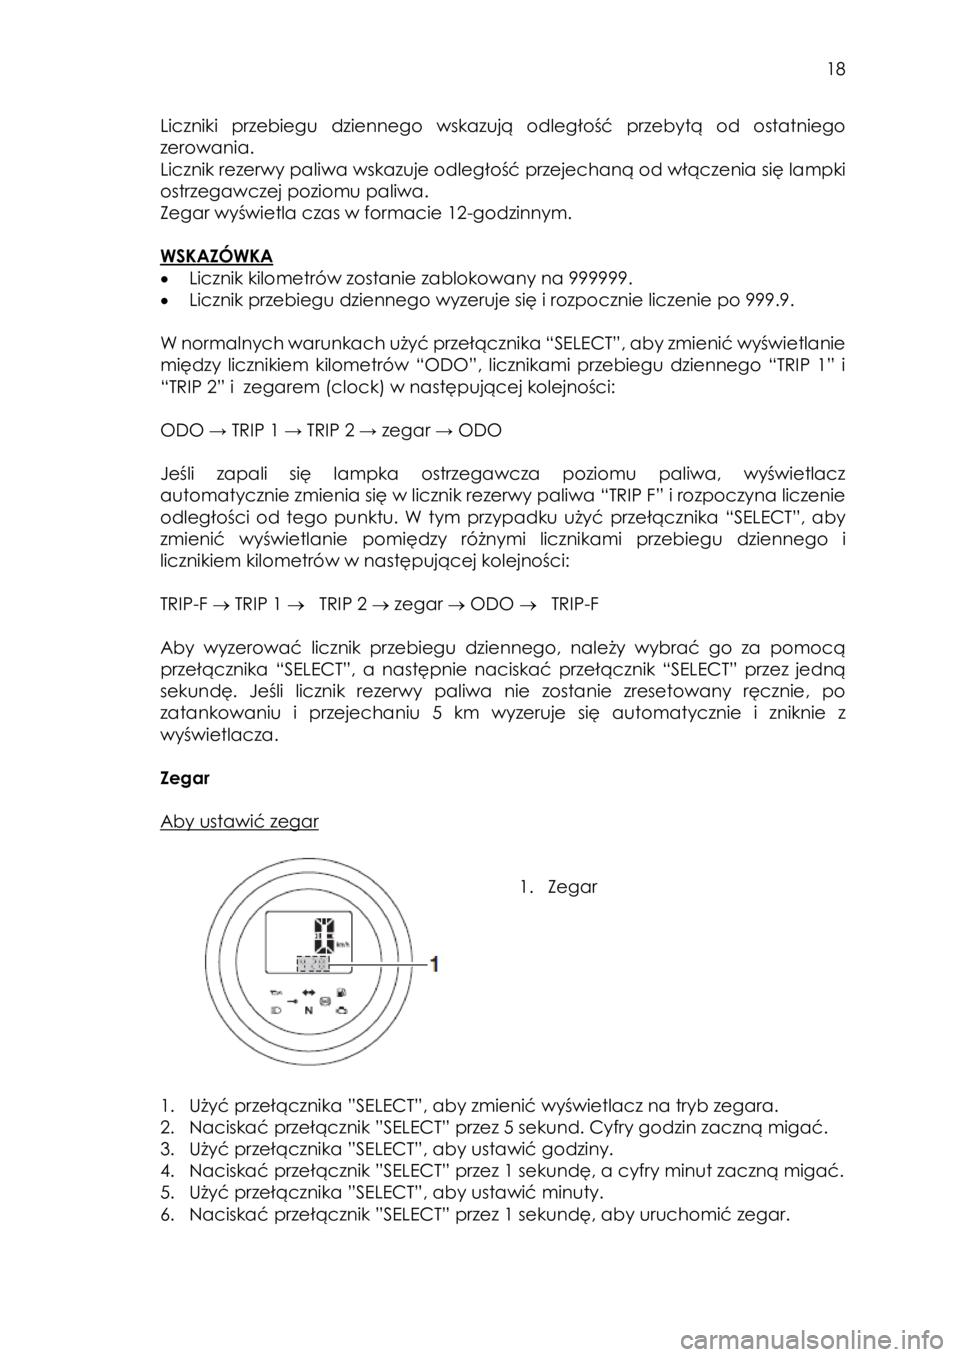 YAMAHA SCR950 2018  Instrukcja obsługi (in Polish)  
   
18 
 
Liczniki przebiegu  dziennego wskazują odległość  przebytą  od  ostatniego 
zerowania.  
Licznik rezerwy paliwa wskazuje odległość przejechaną od włączenia się lampki 
ostrzega